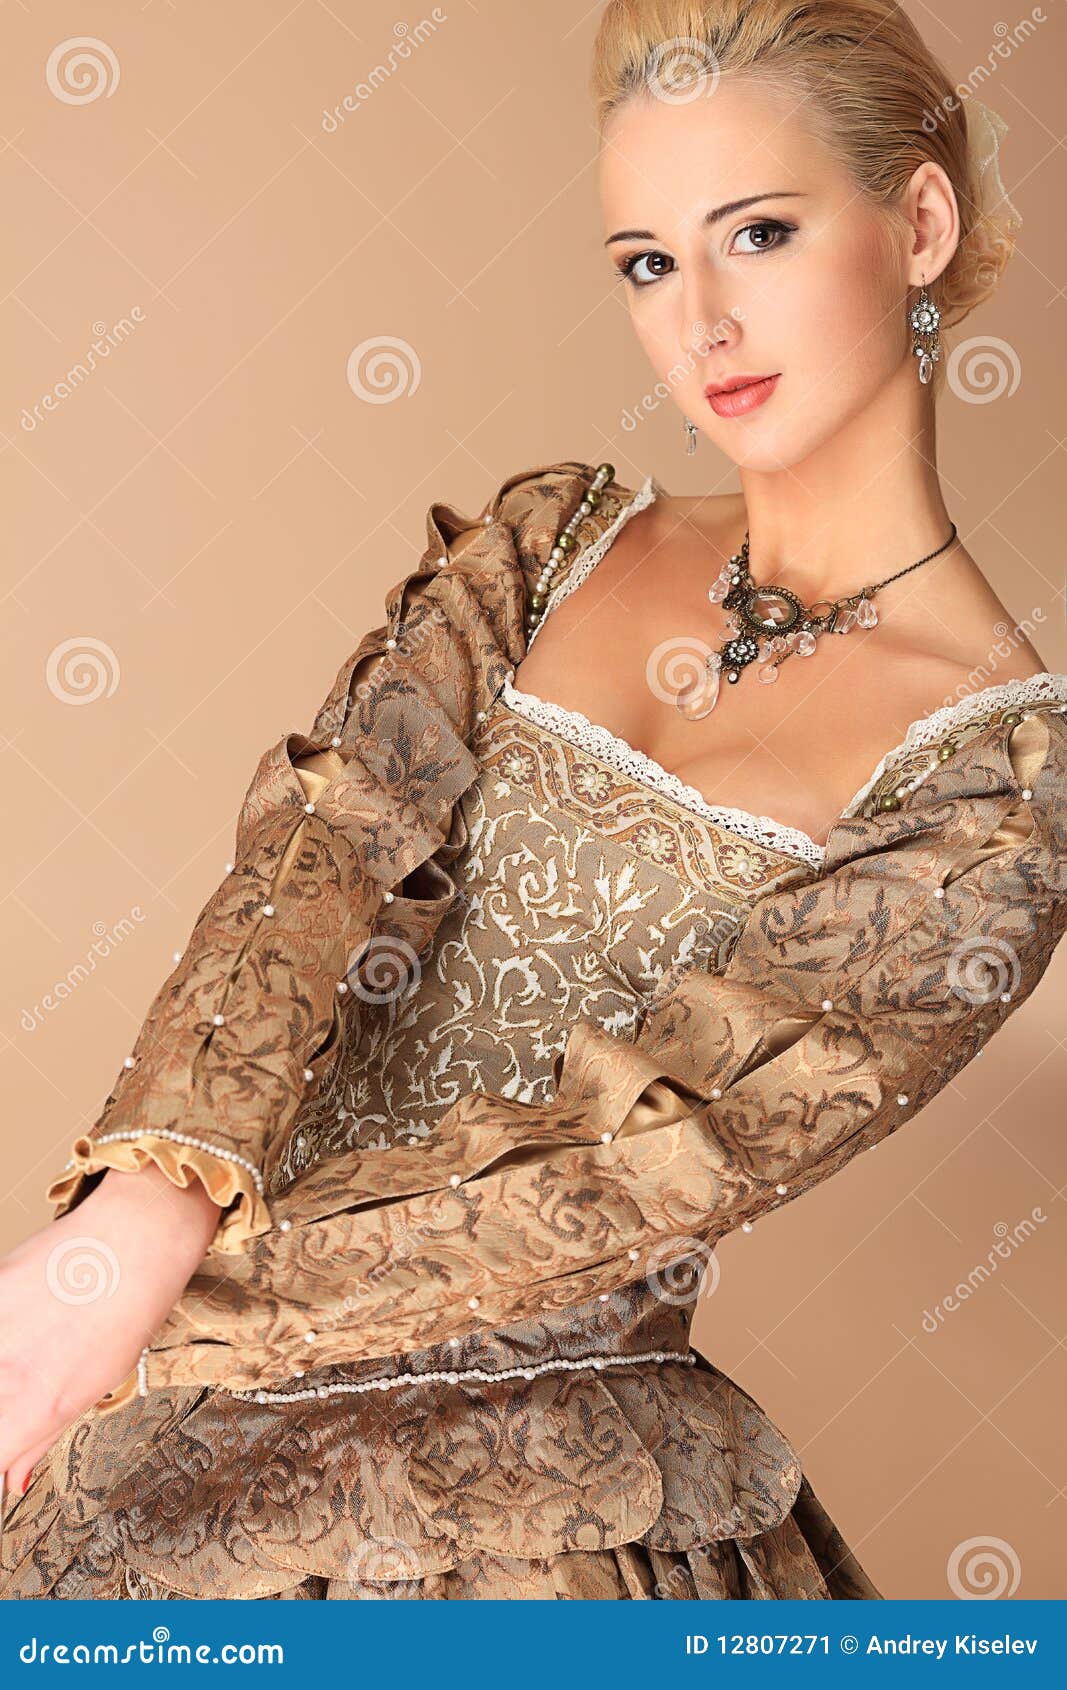 senhora-no-vestido-medieval-12807271.jpg